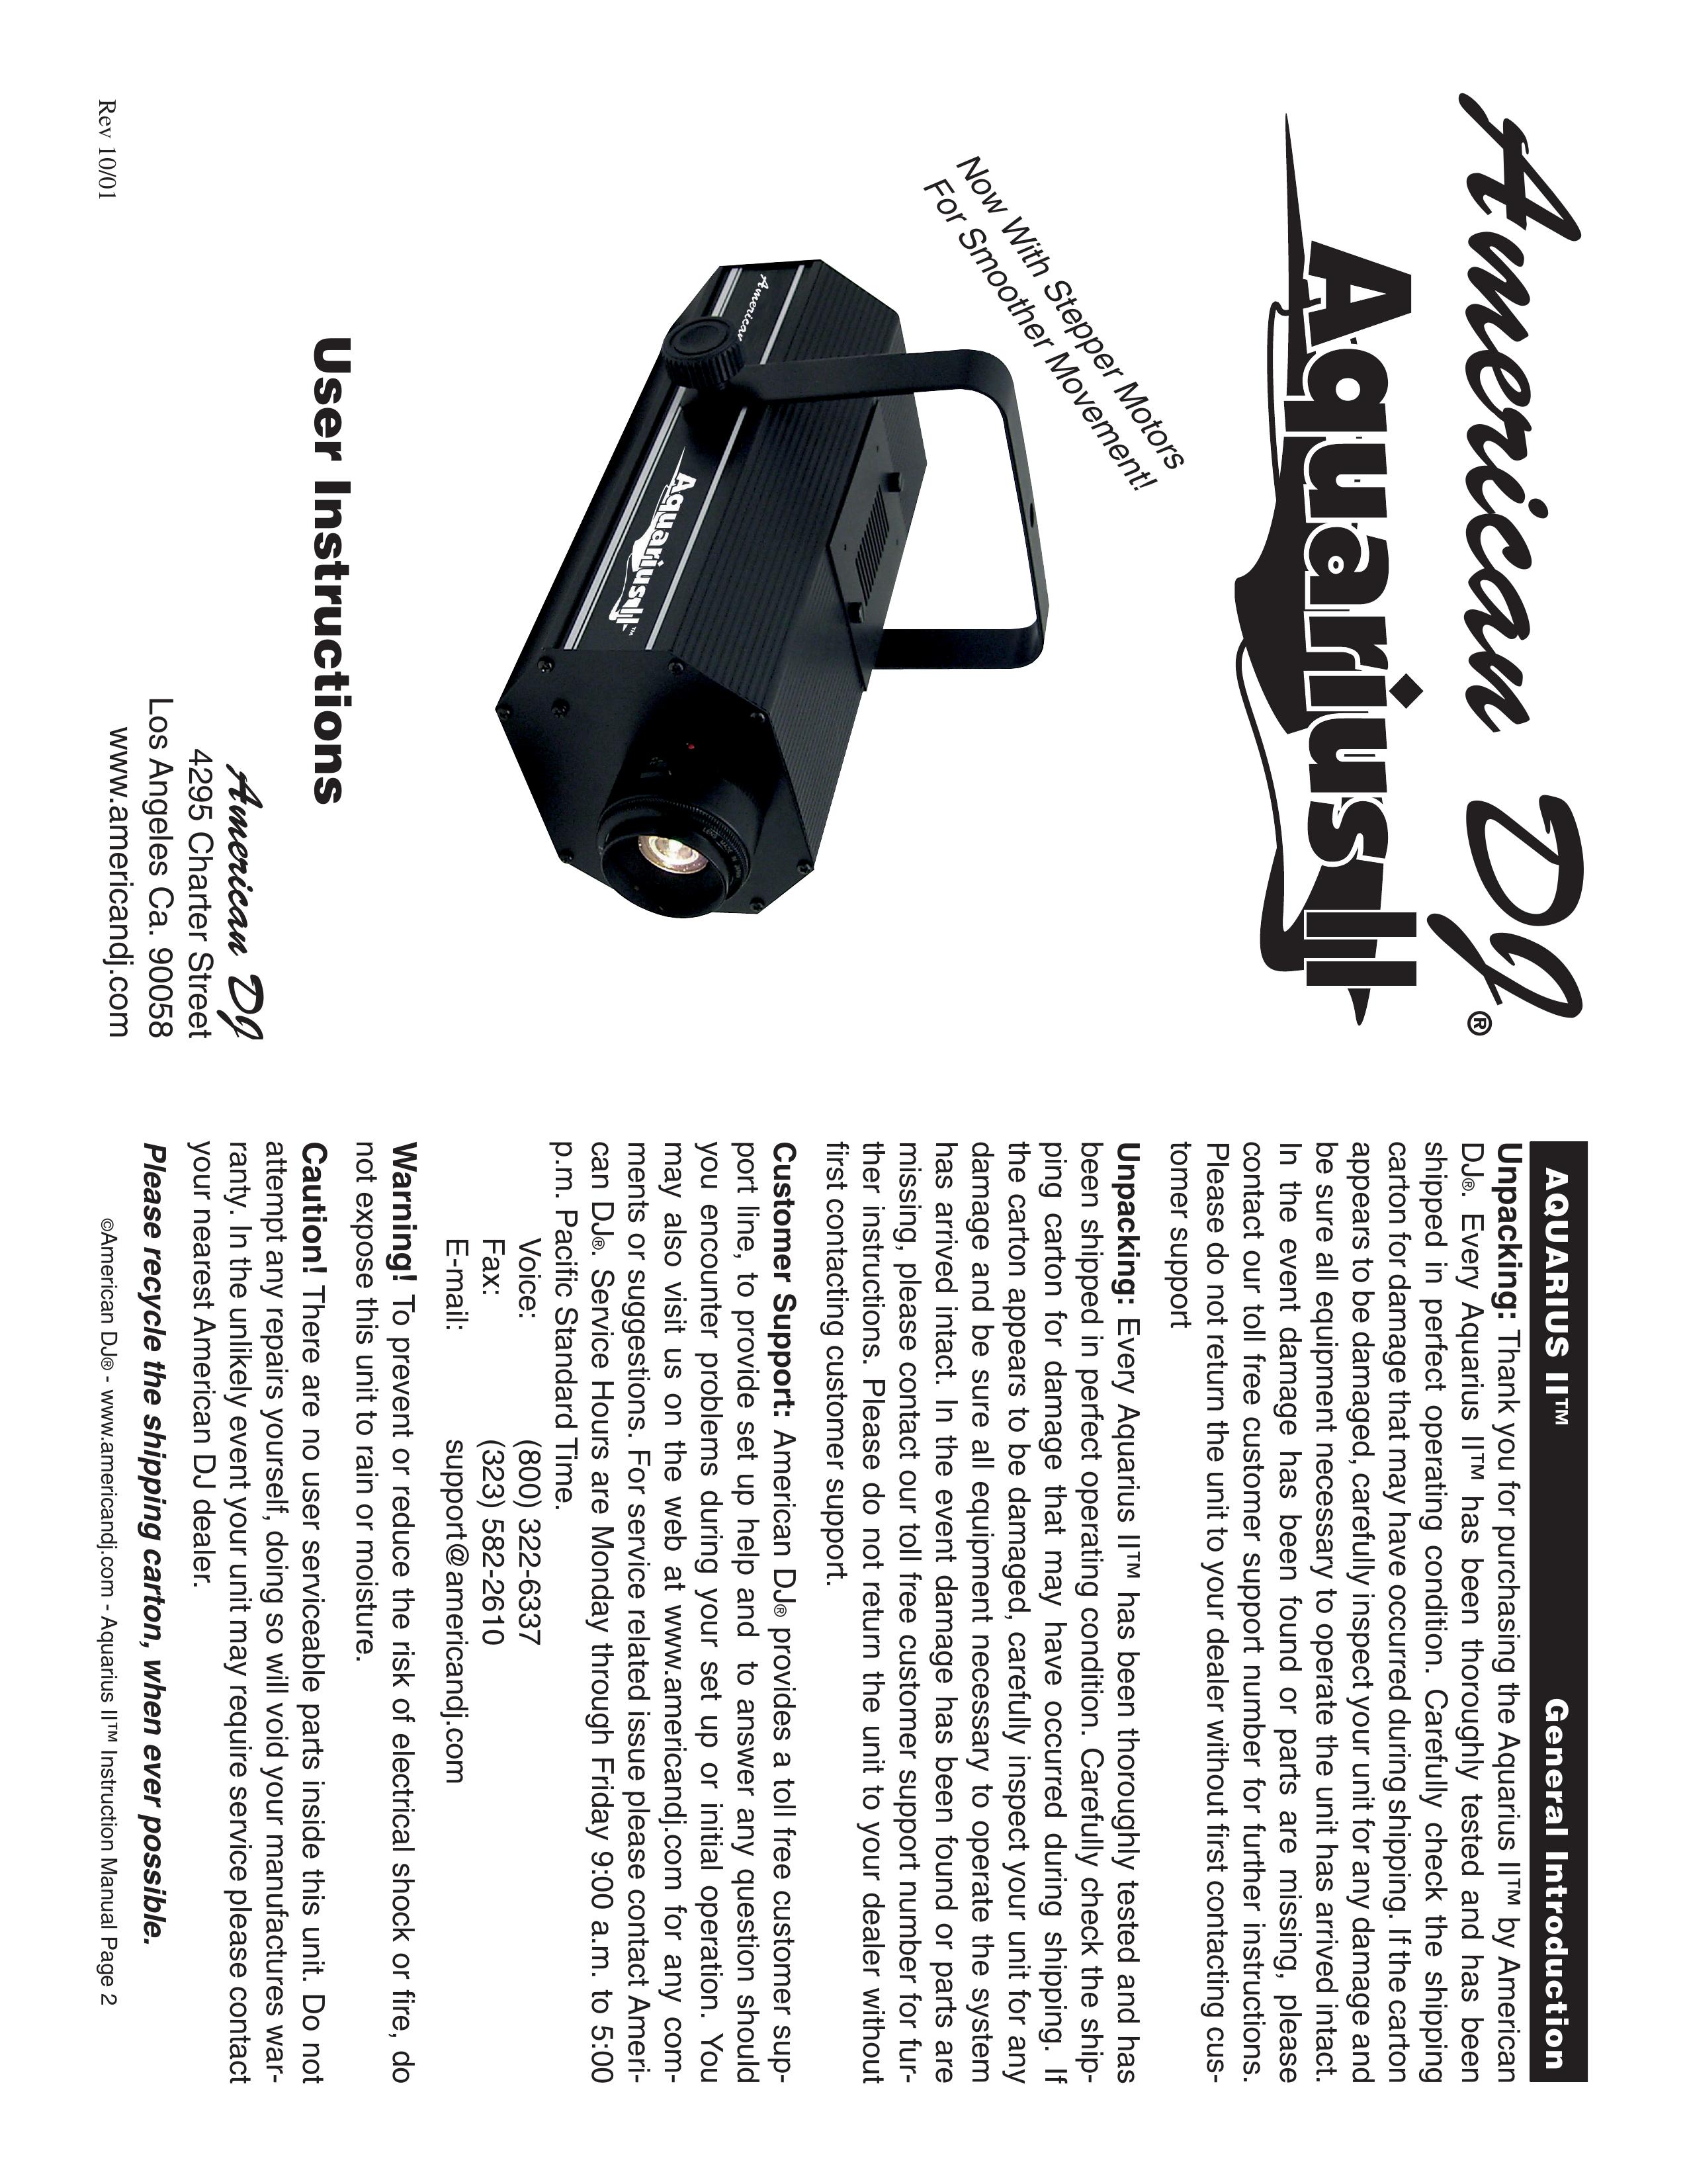 American DJ Aquarius II DJ Equipment User Manual